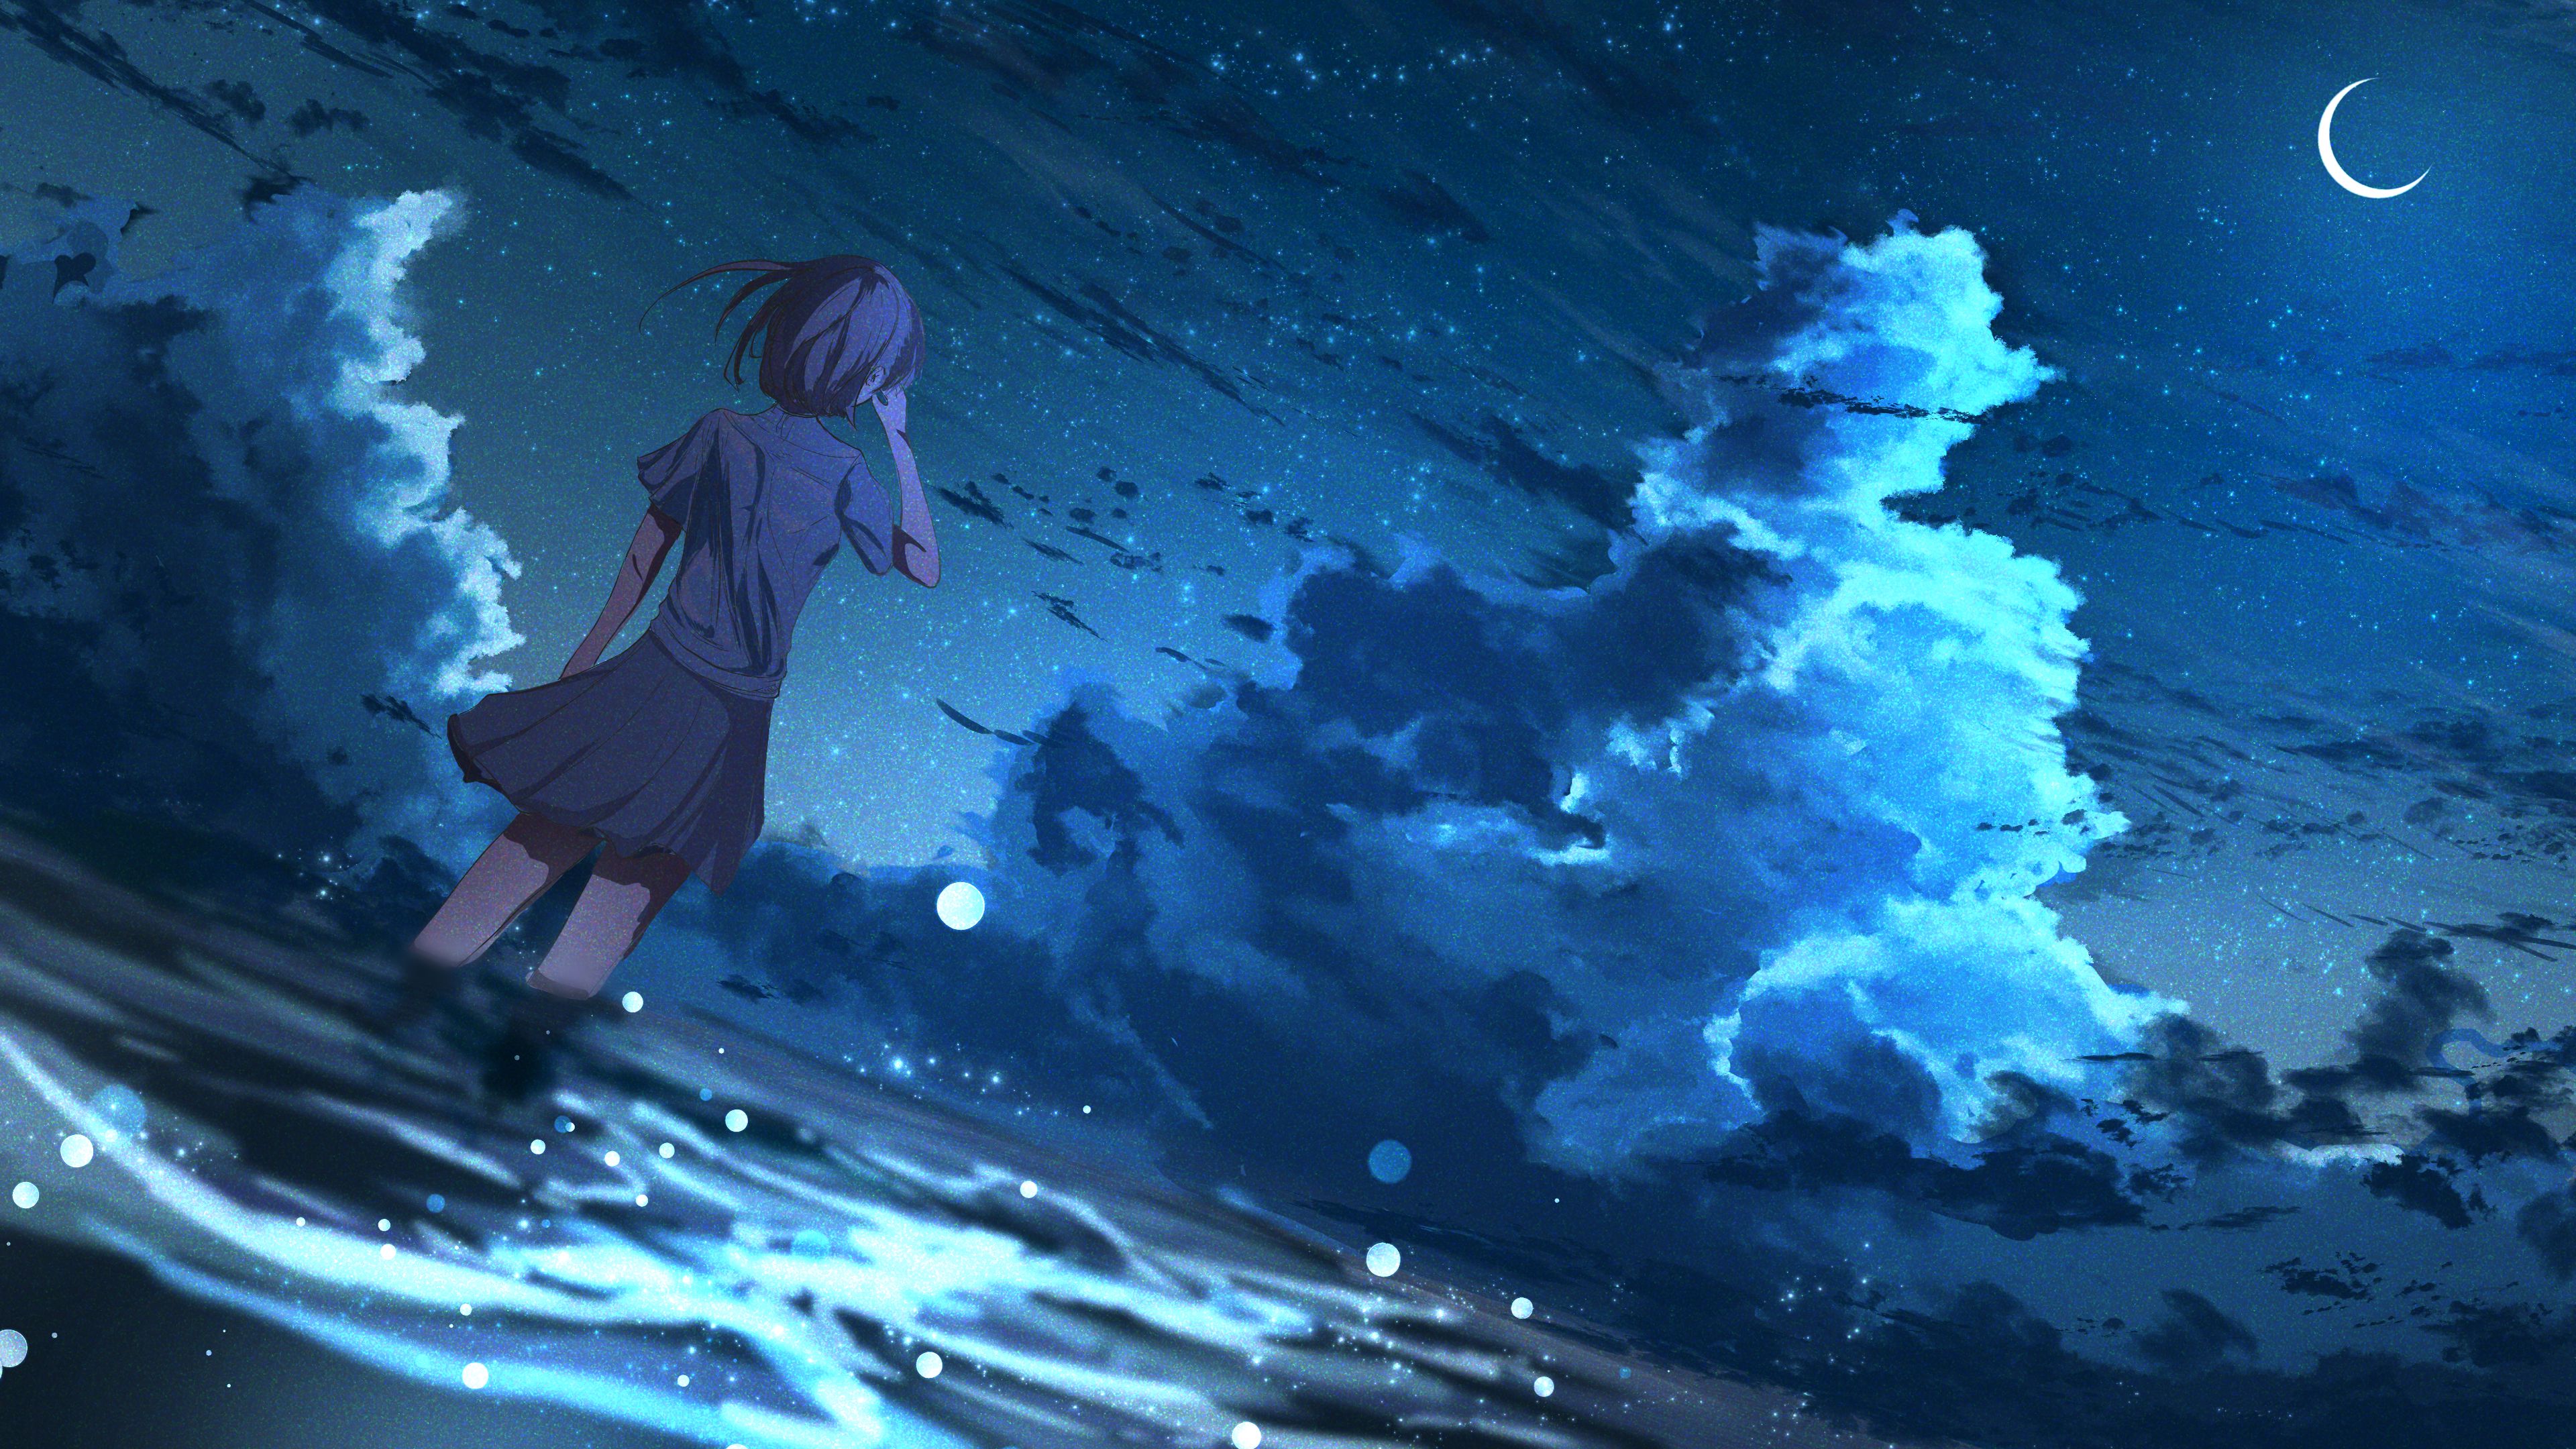 Bạn đang tìm kiếm một hình nền anime đẹp để làm nền cho màn hình máy tính của mình? Hãy xem ngay hình ảnh này với cô gái đầy nghệ thuật và phong cách, trong khuôn khổ đêm tối, với cơn gió lay nhẹ và những vì sao trong đêm. Đảm bảo bạn sẽ bị cuốn hút bởi sự đẹp và lãng mạn trong hình ảnh này!